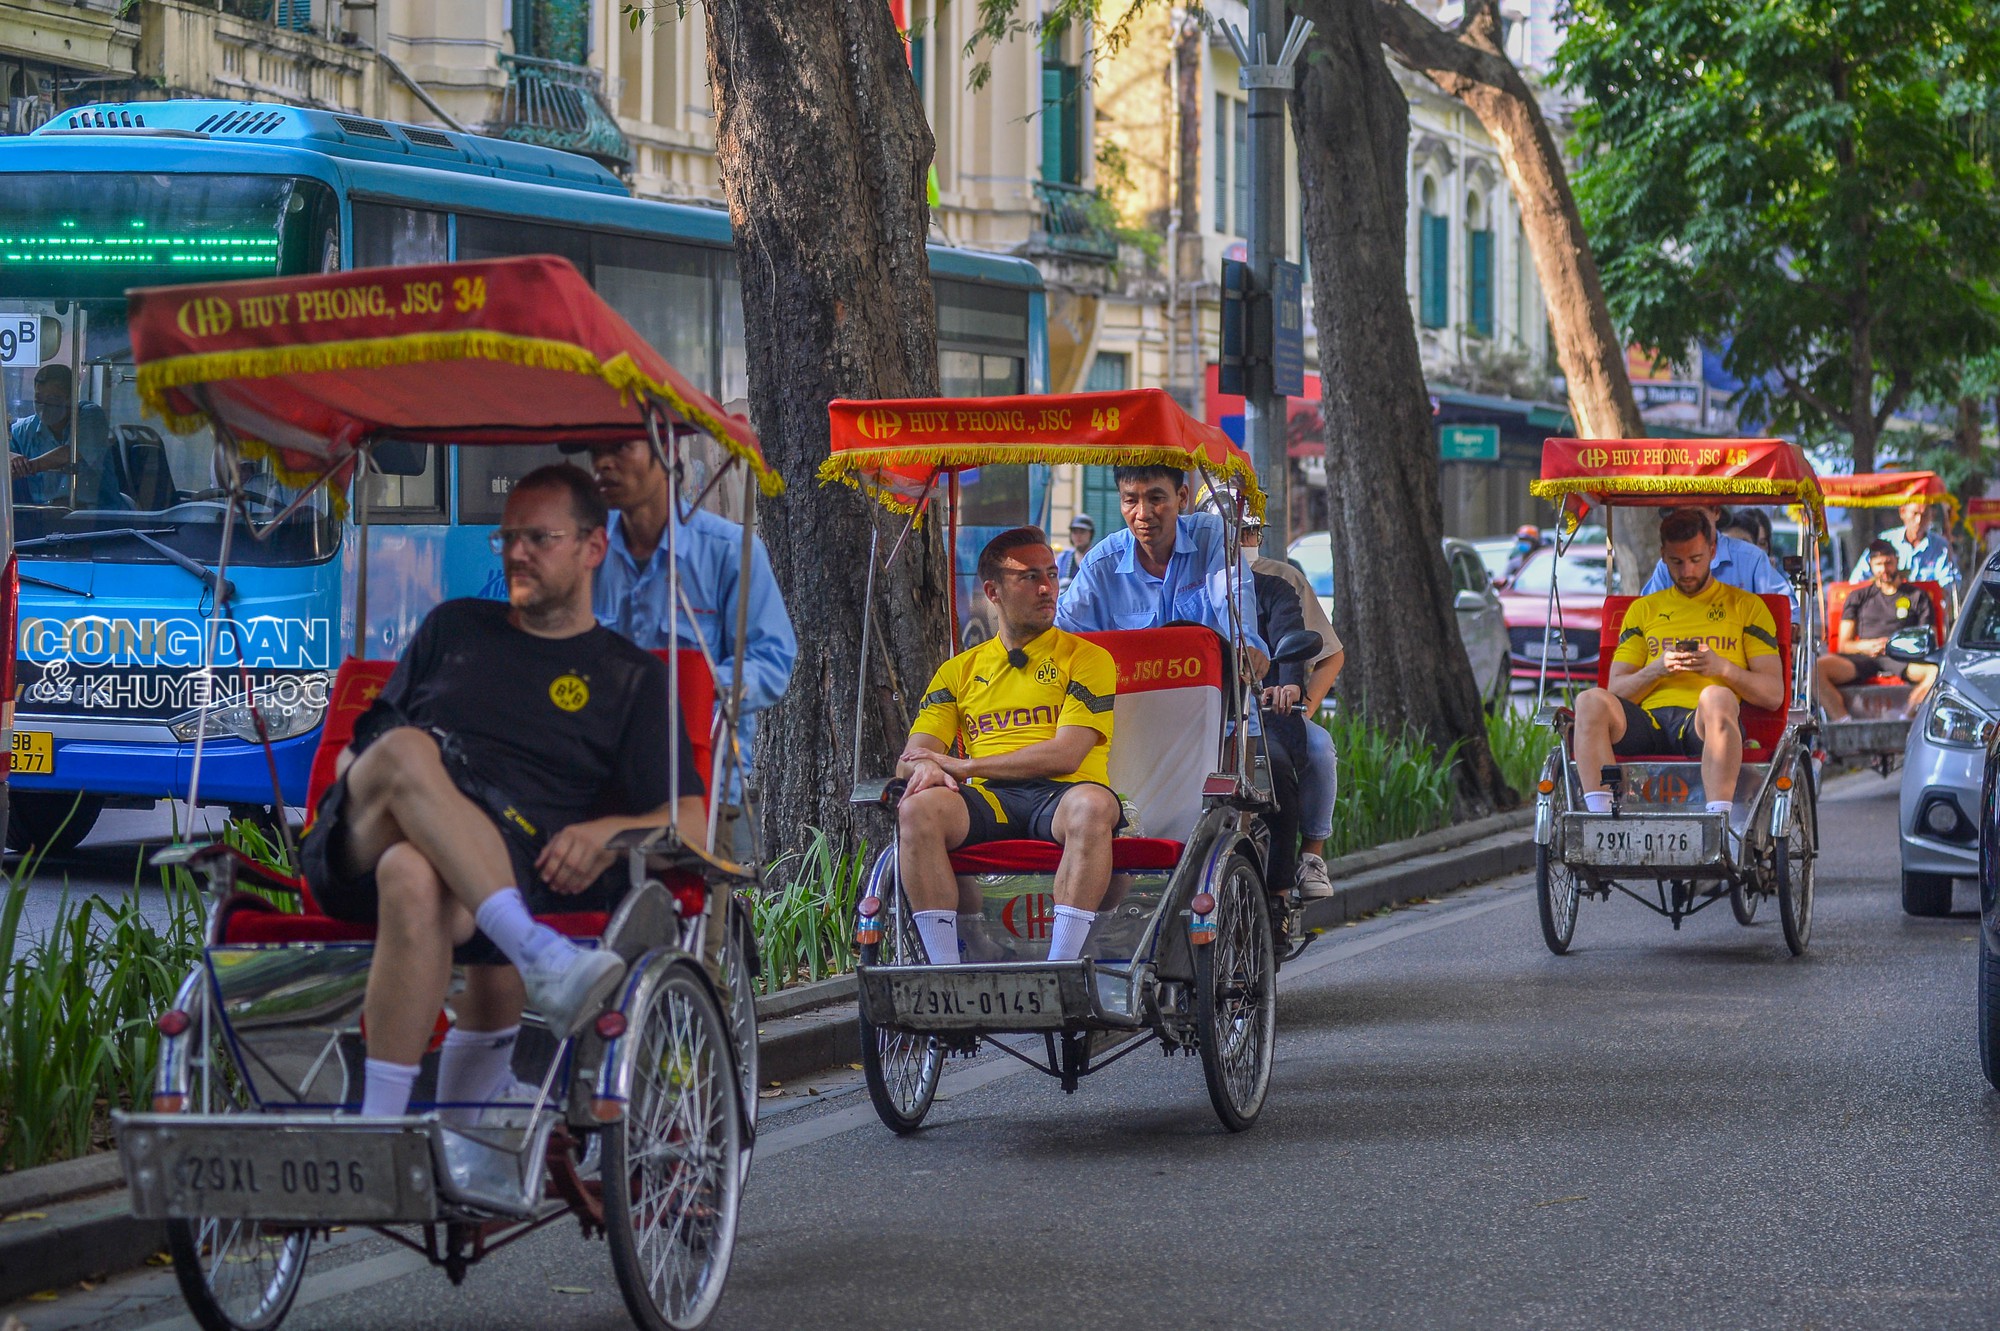 Câu lạc bộ Dortmund thăm Đền Ngọc Sơn, ngồi xích lô dạo phố ở Hà Nội - Ảnh 1.